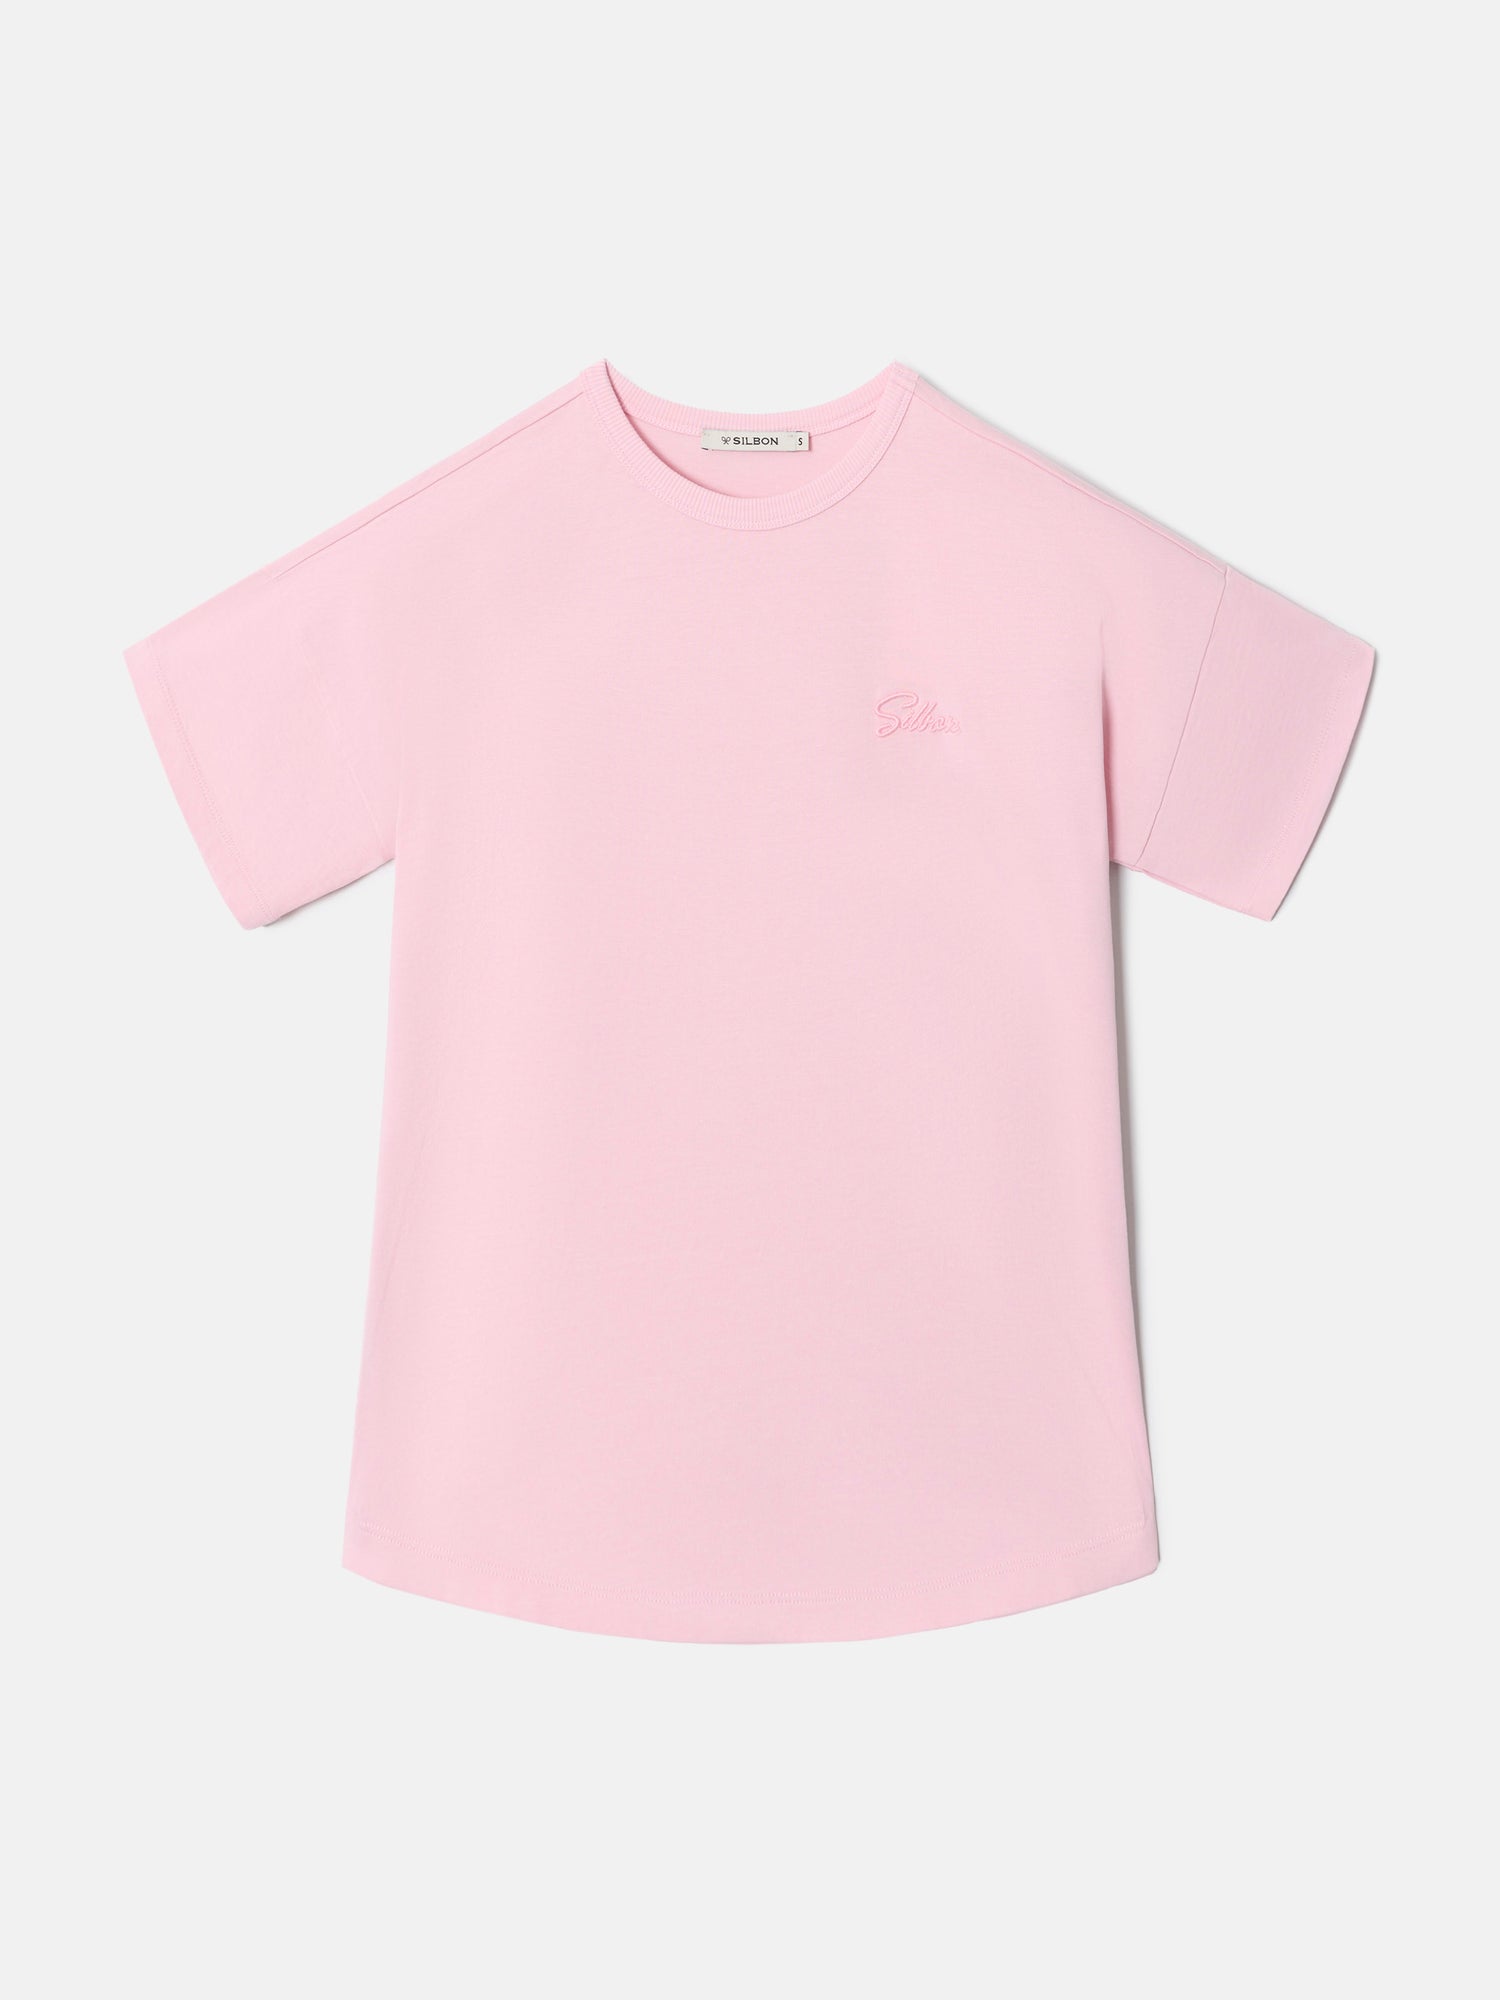 Camiseta woman silbon mini rosa 